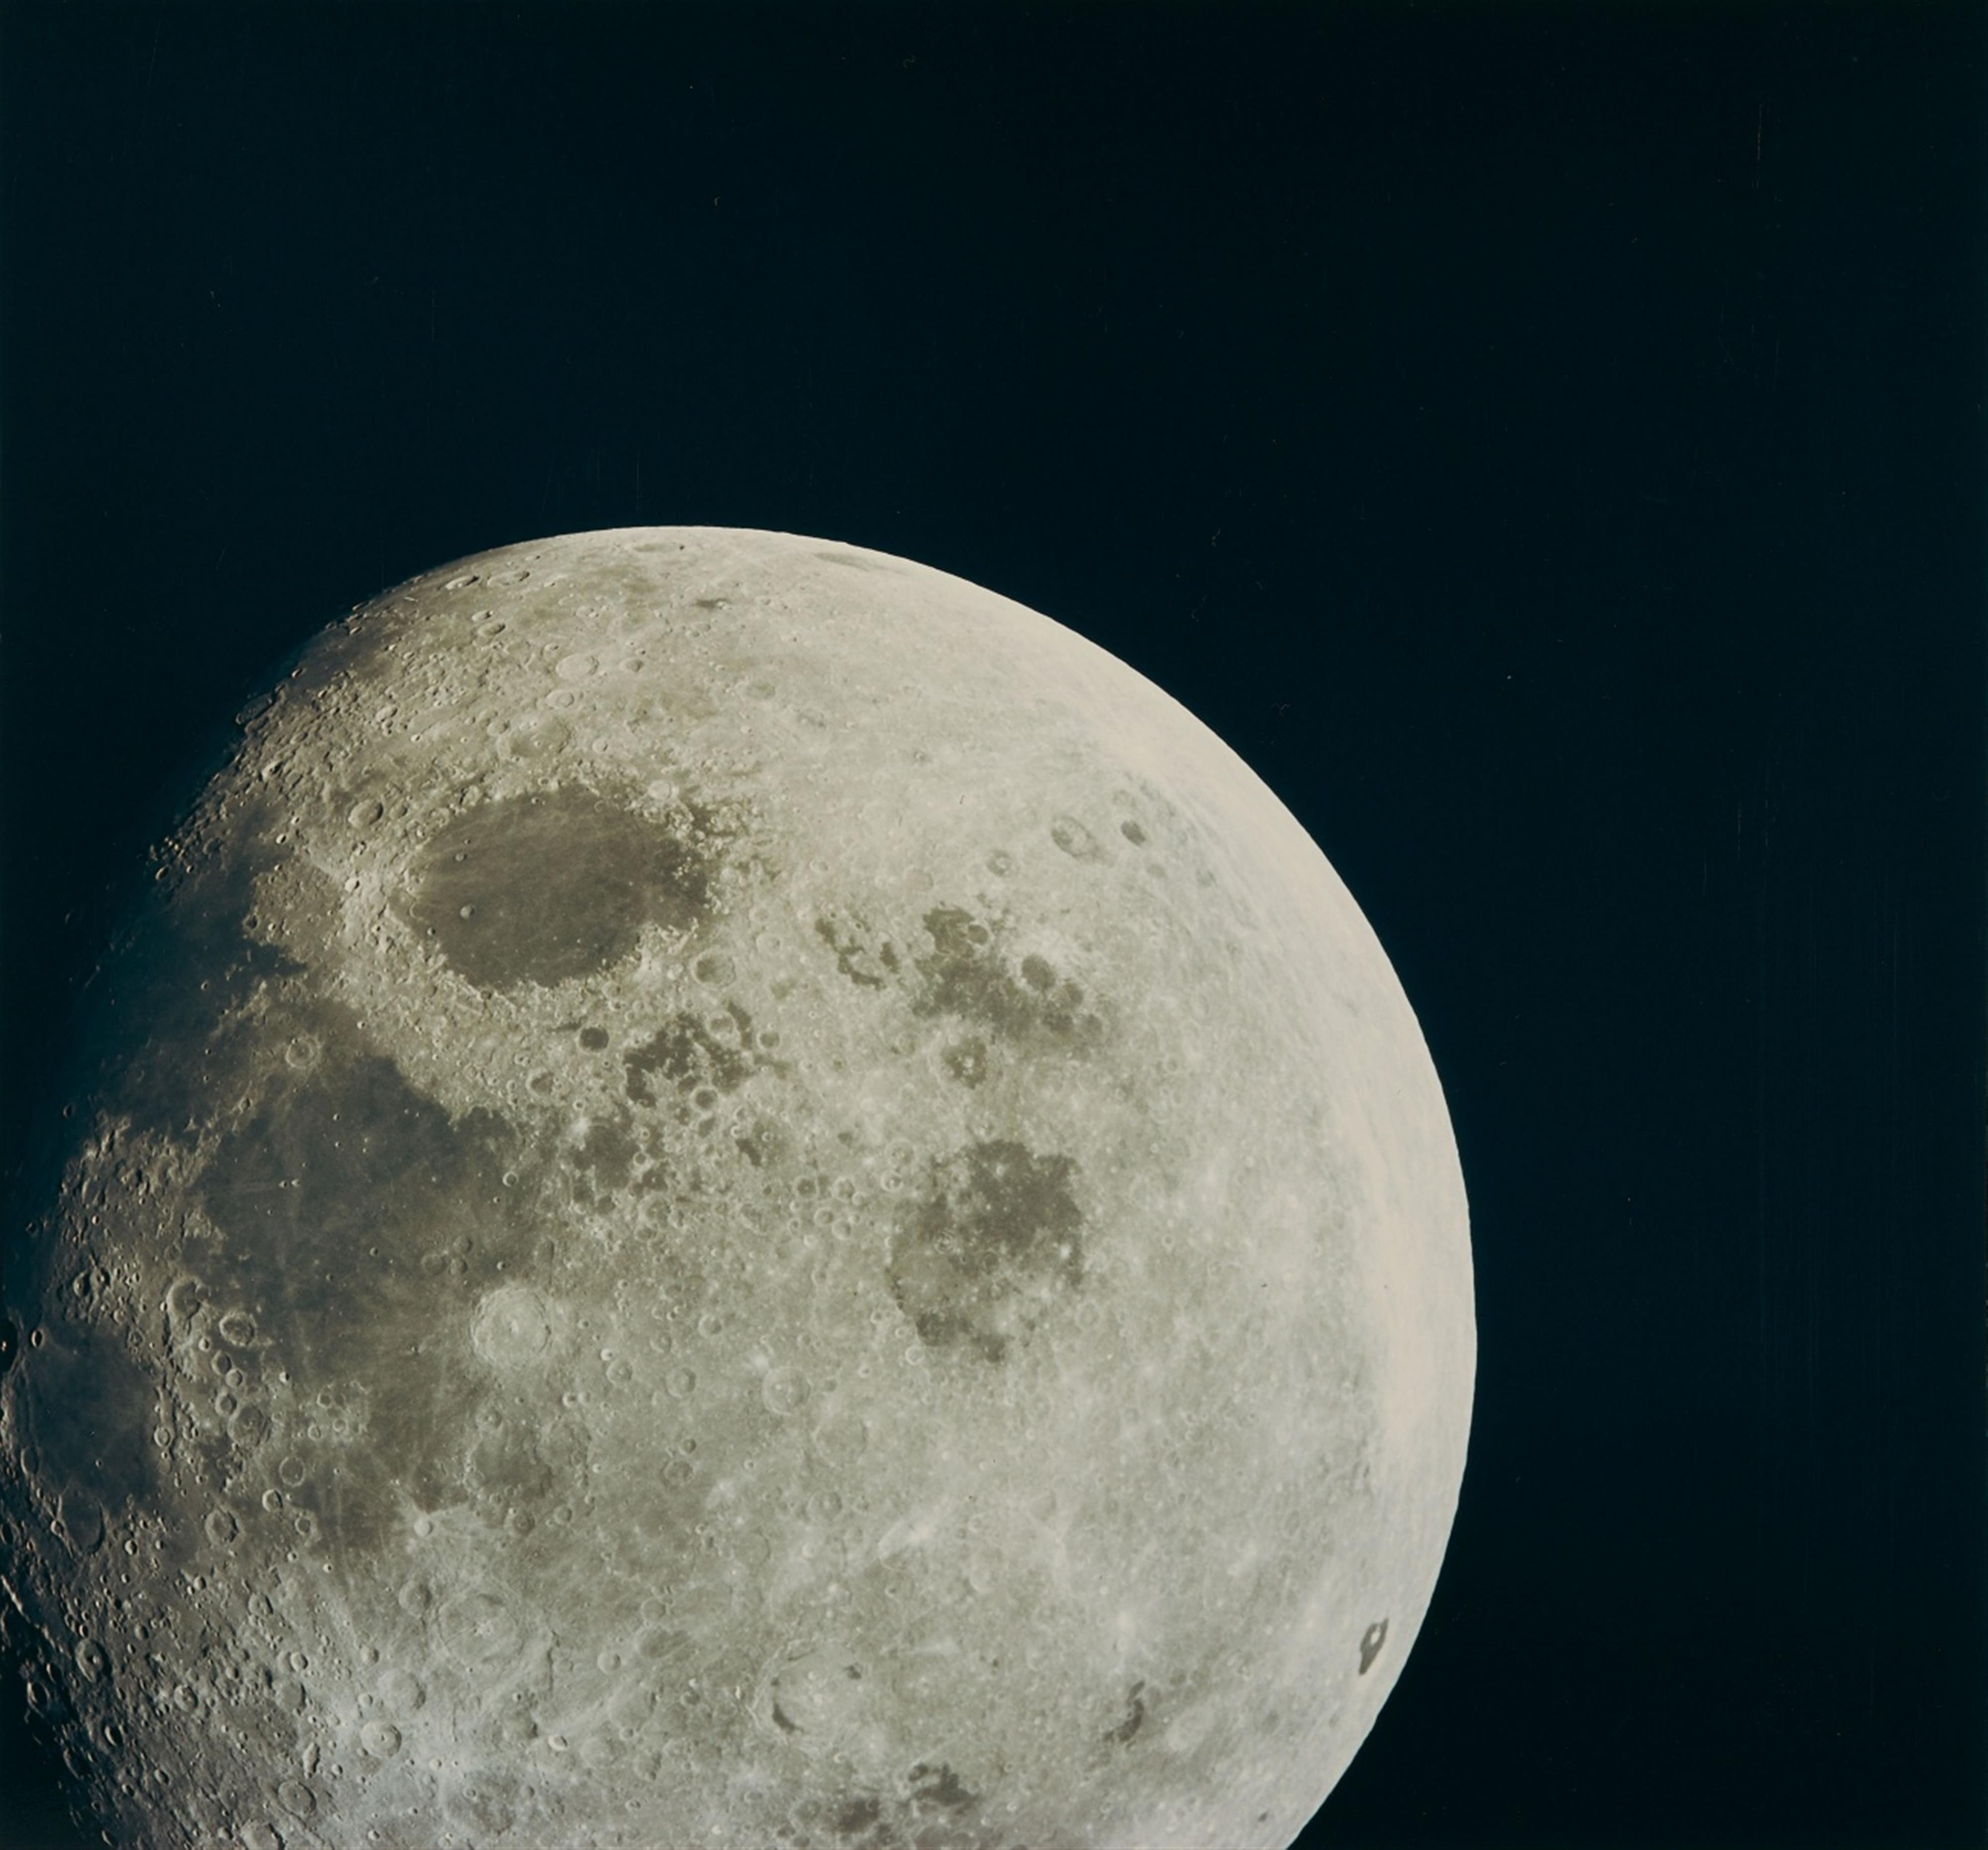 Луна в 8 натальном. Апполо 8. Миссия Аполлон 8. Apollo 8 1968. Фото Луны высокого разрешения.